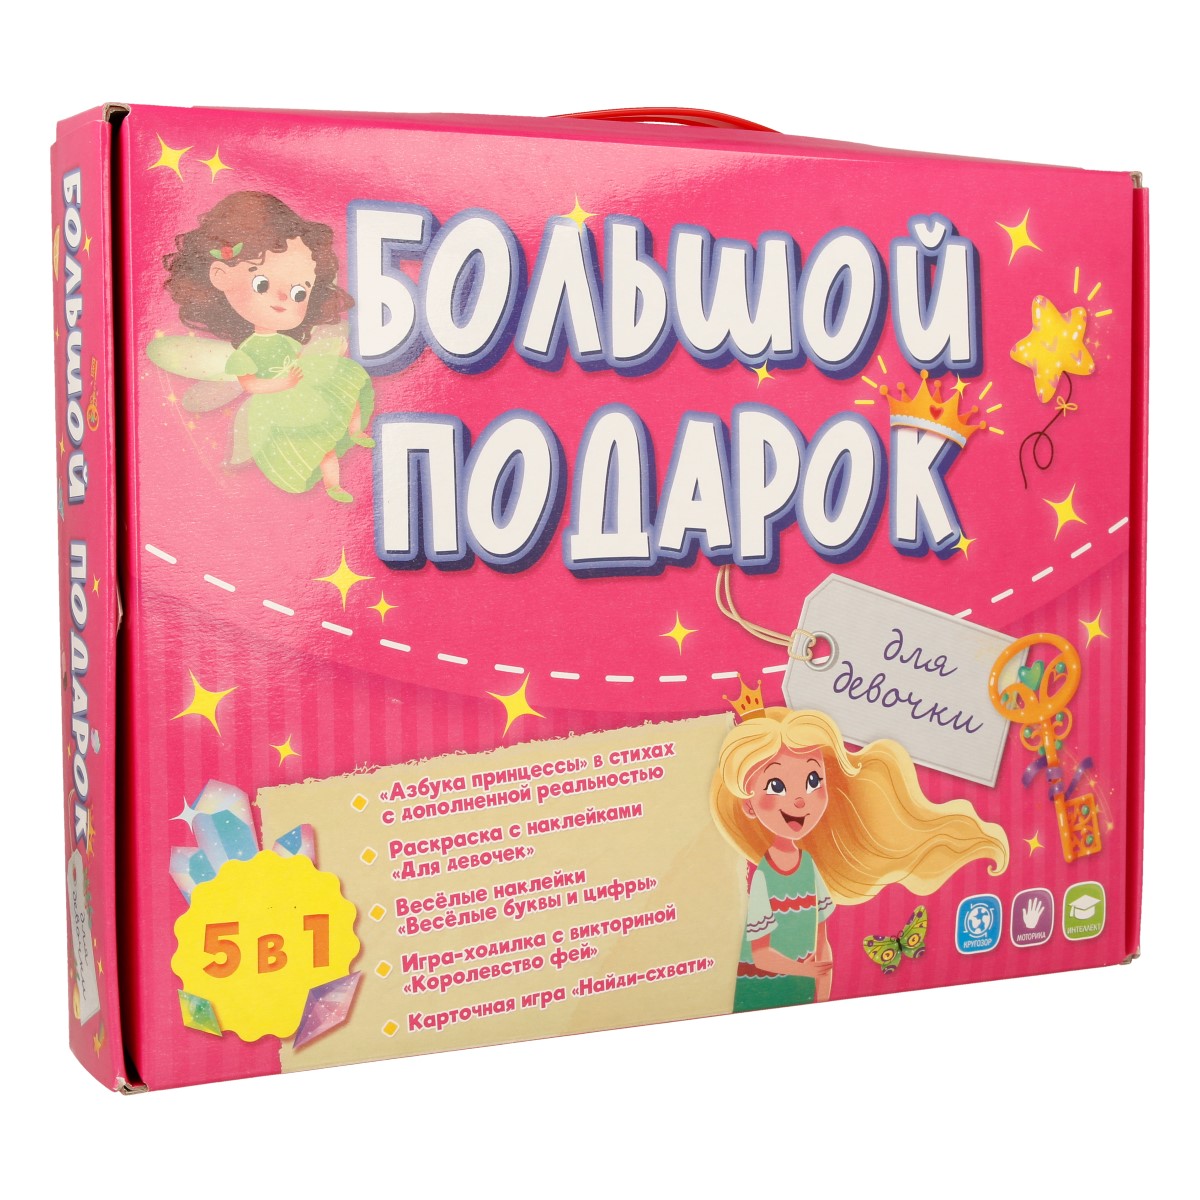 Интернет-магазин игрушек и развивающих игр для детей Bondibon 🚼 Низкие цены на детские товары.